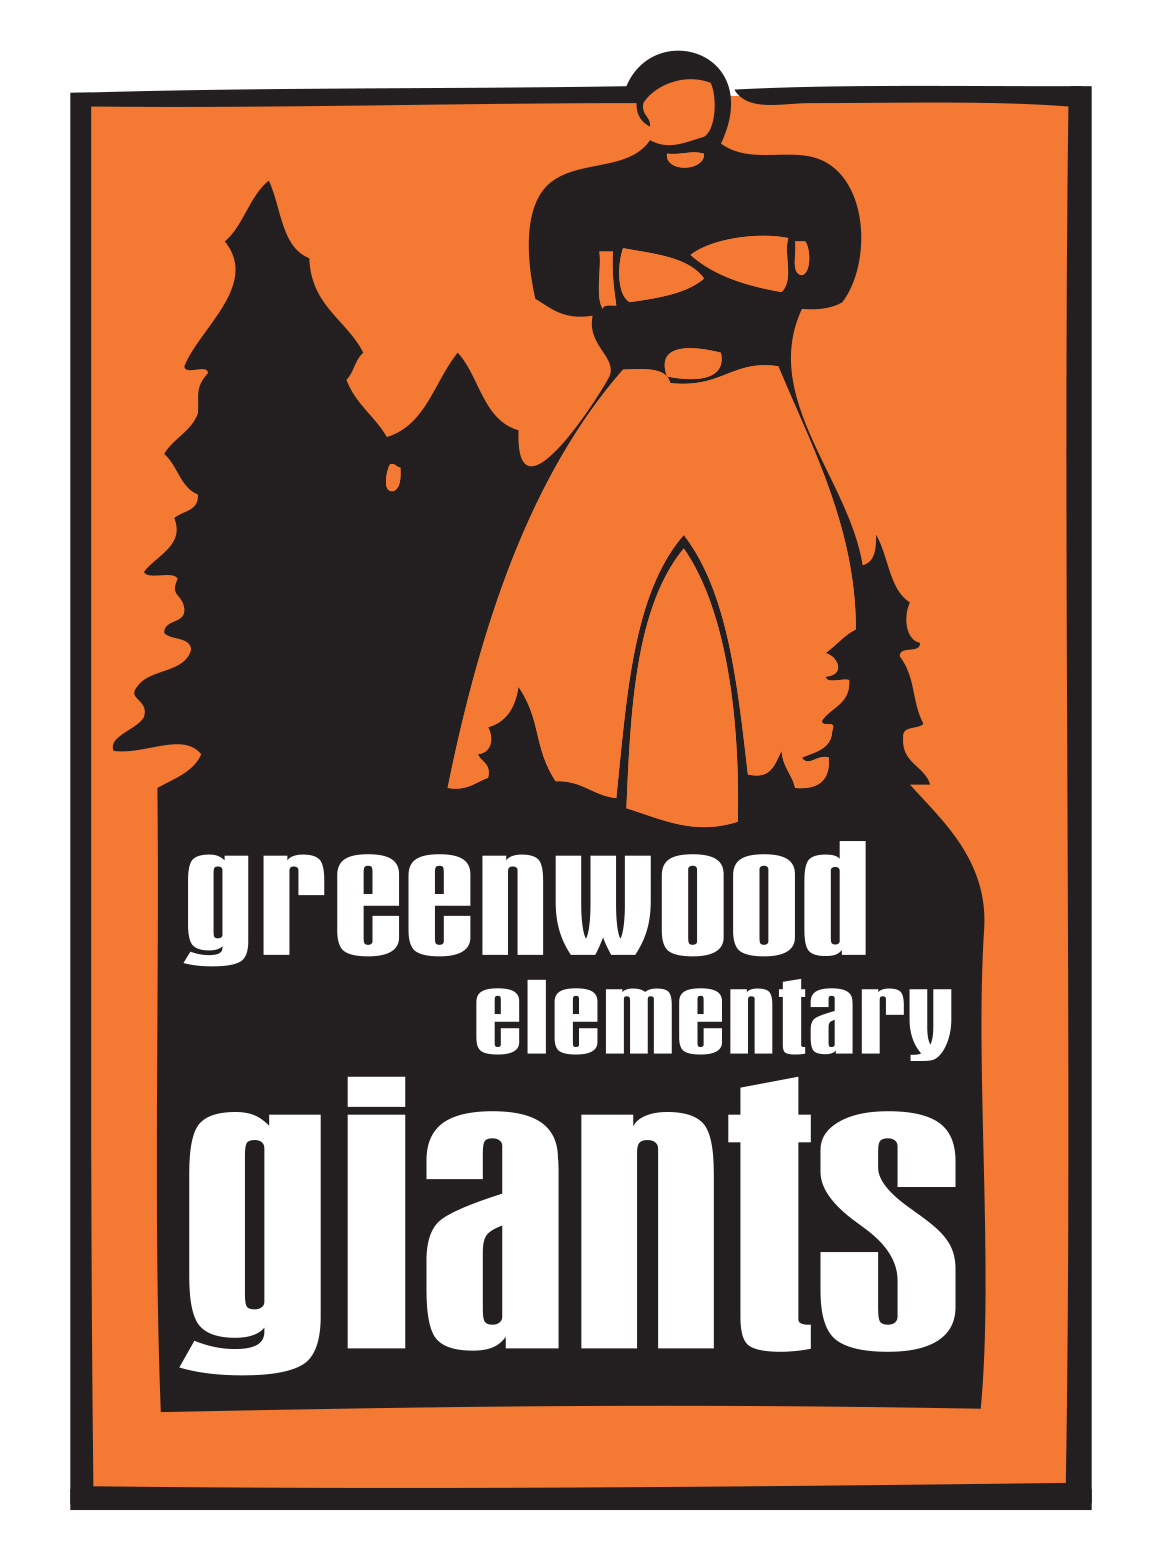 Greenwood Elementary School Giants logo